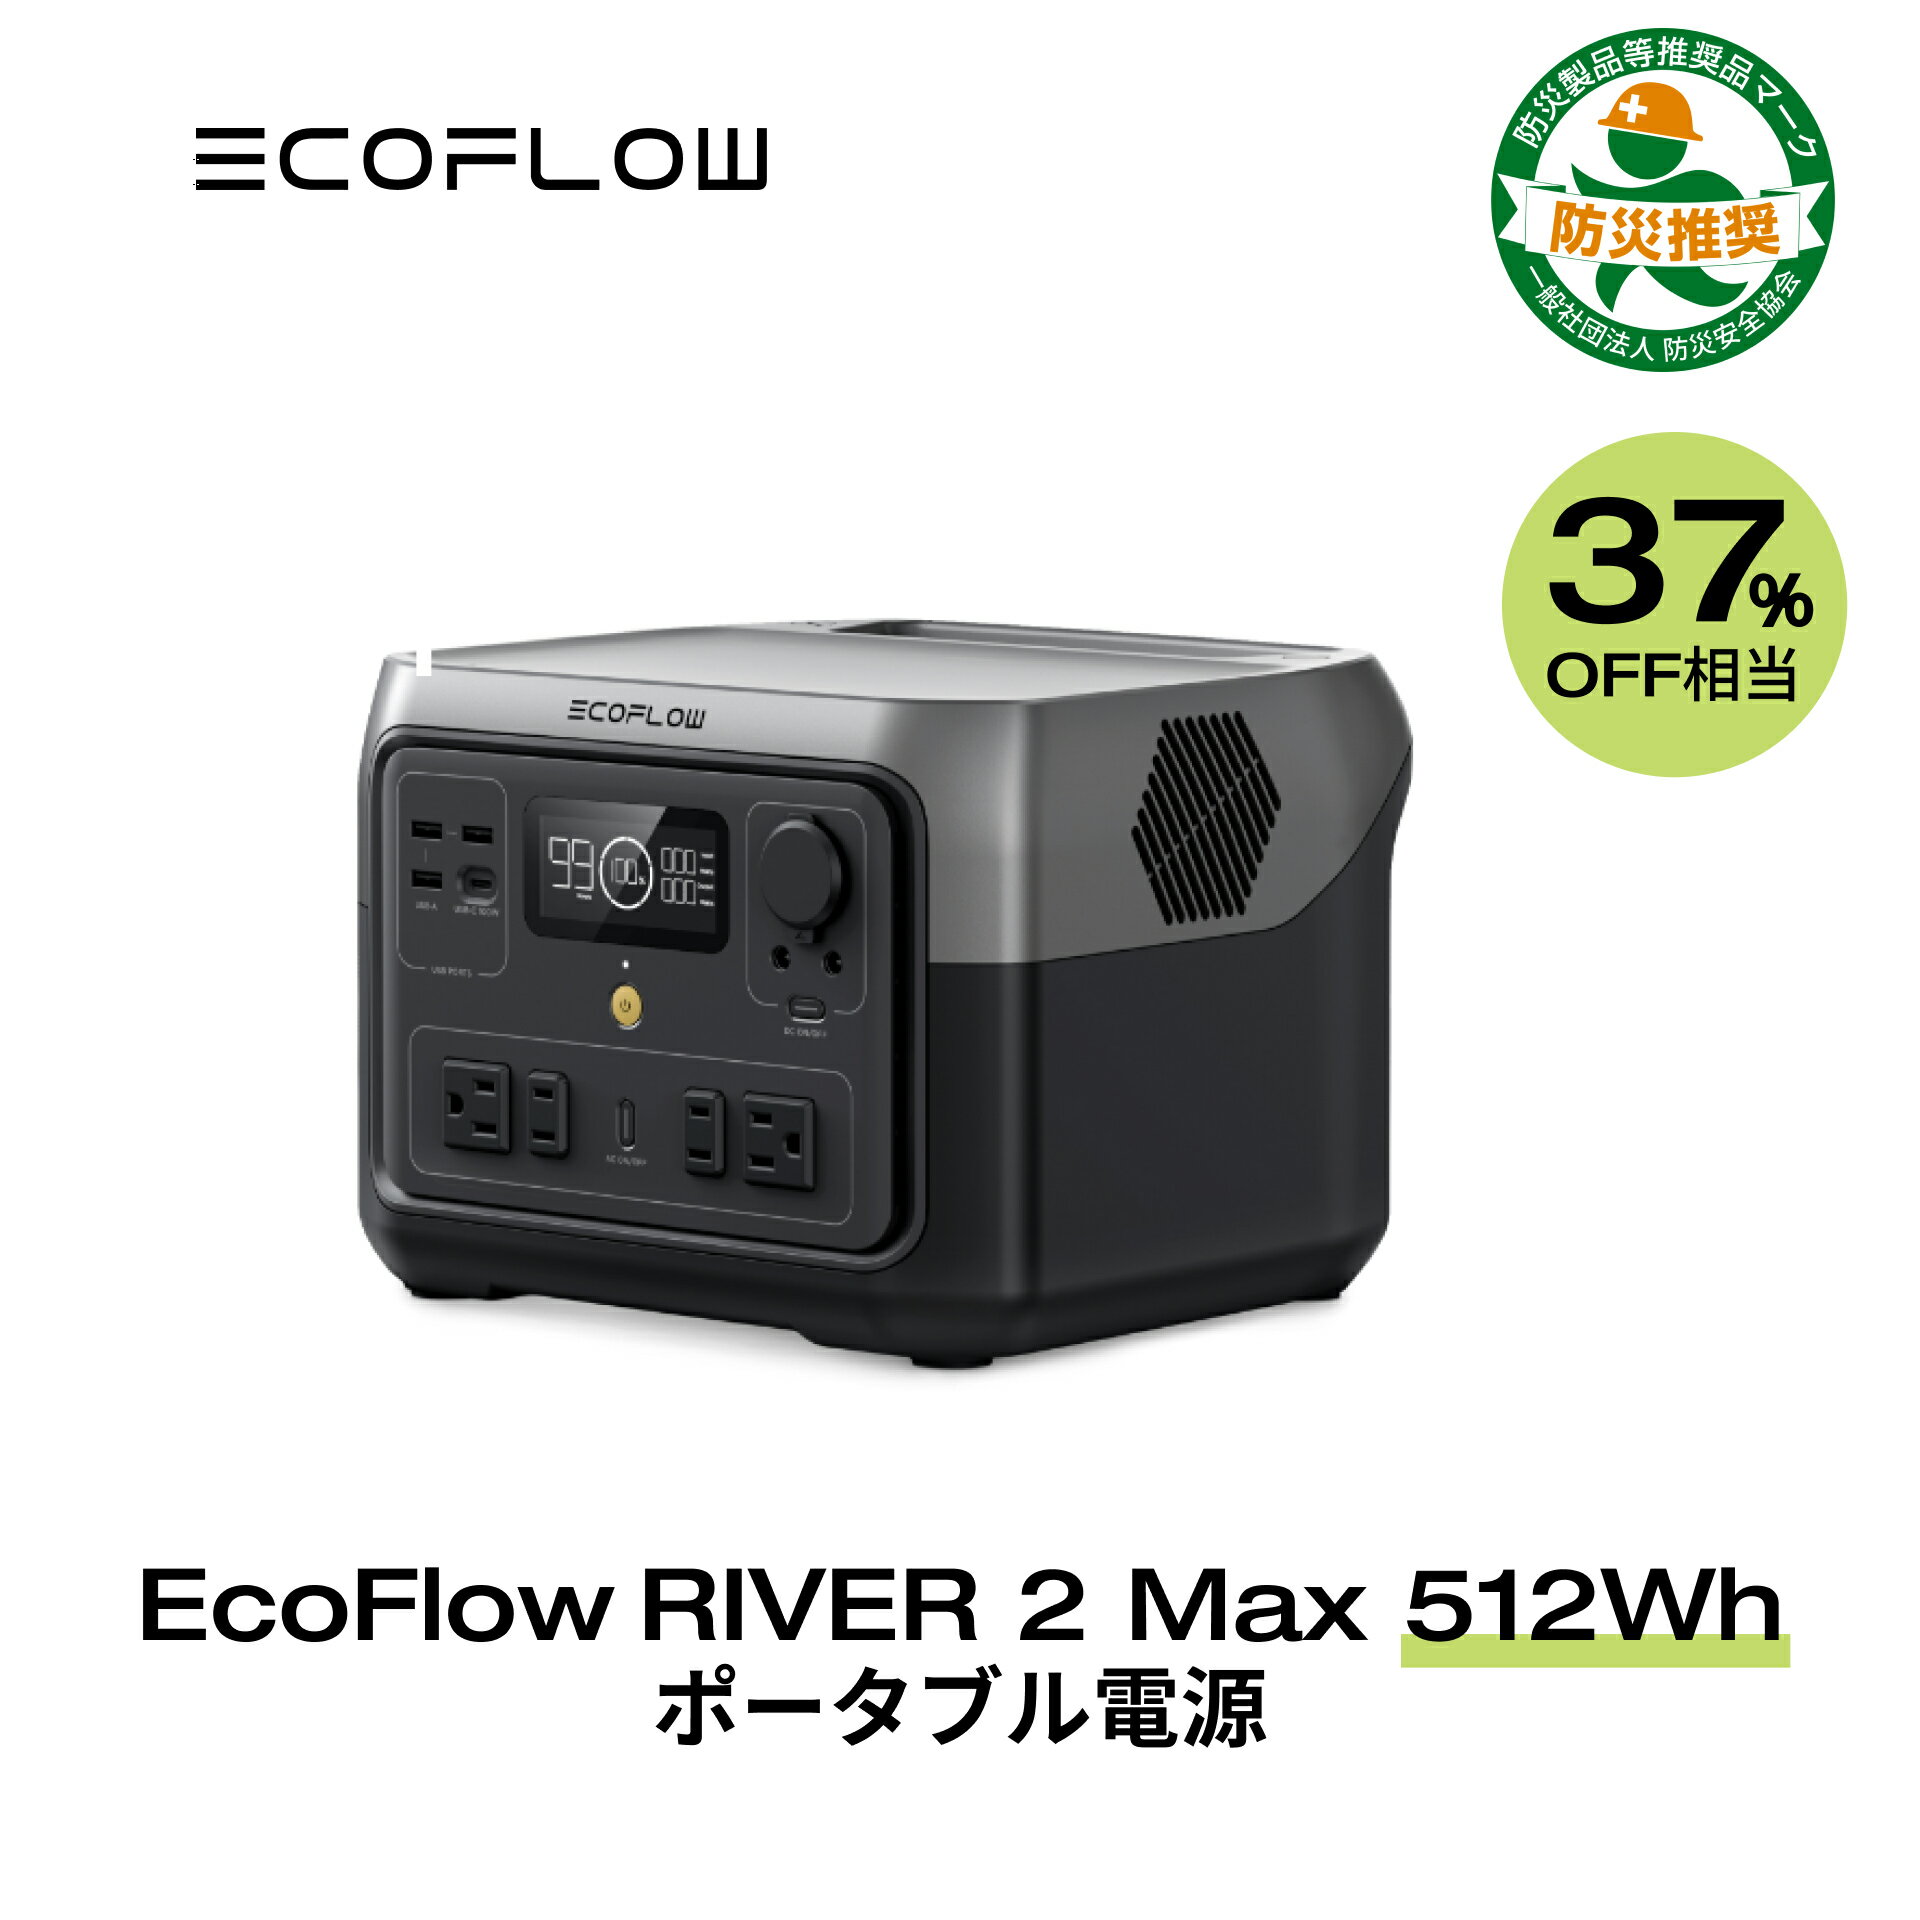 【クーポン併用で40,430円! 5/30迄】EcoFlow